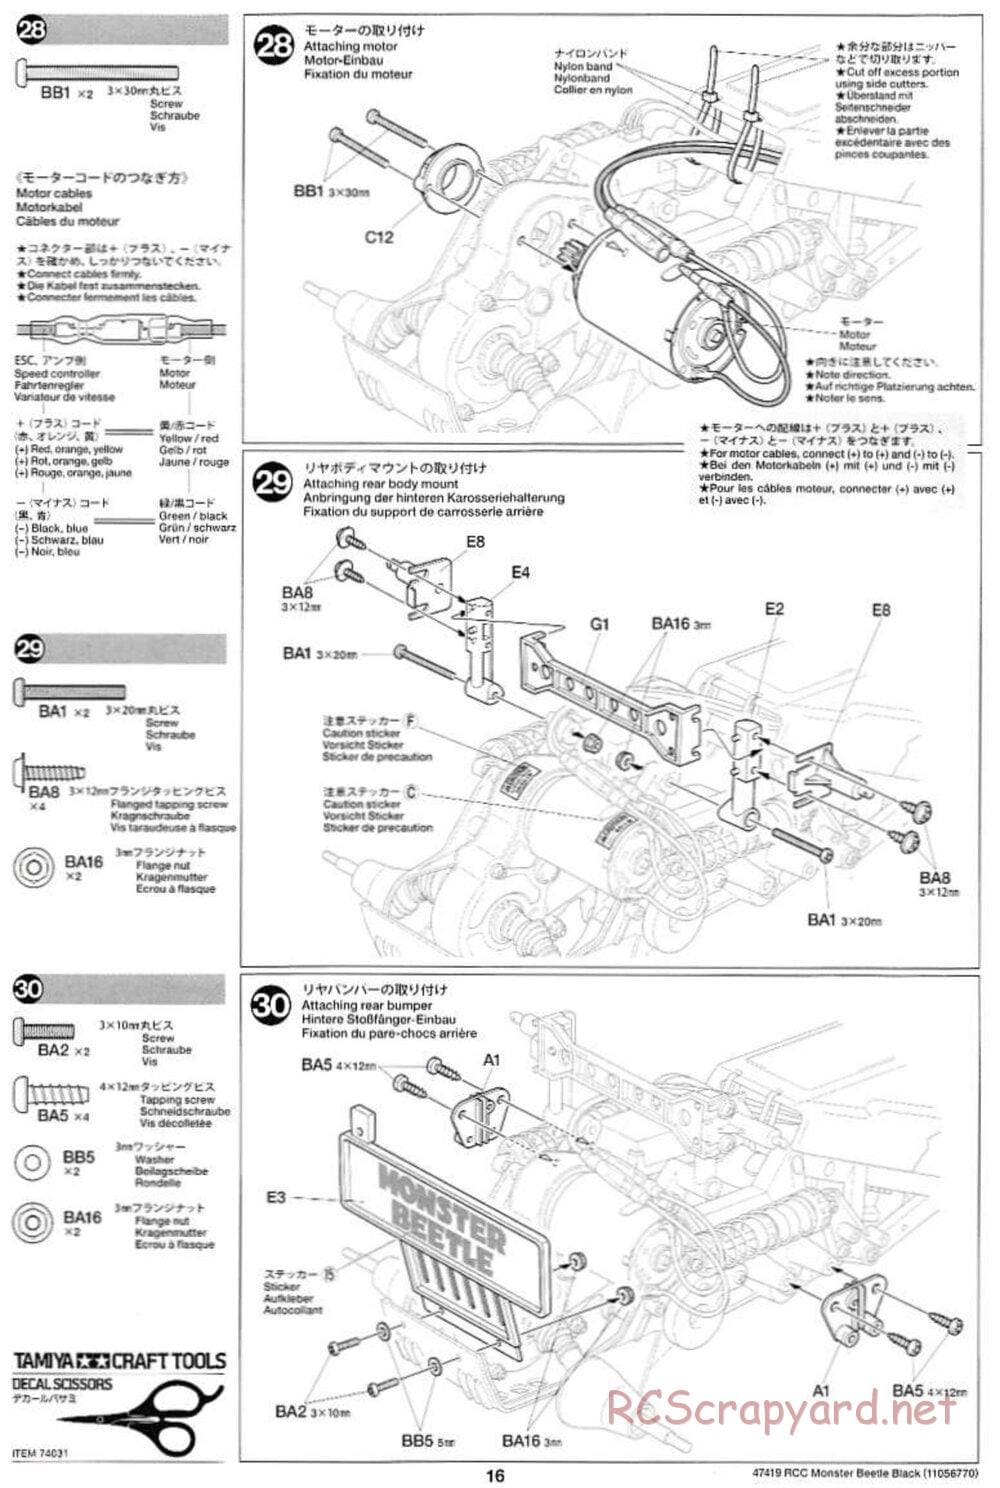 Tamiya - Monster Beetle Black Edition - ORV Chassis - Manual - Page 16